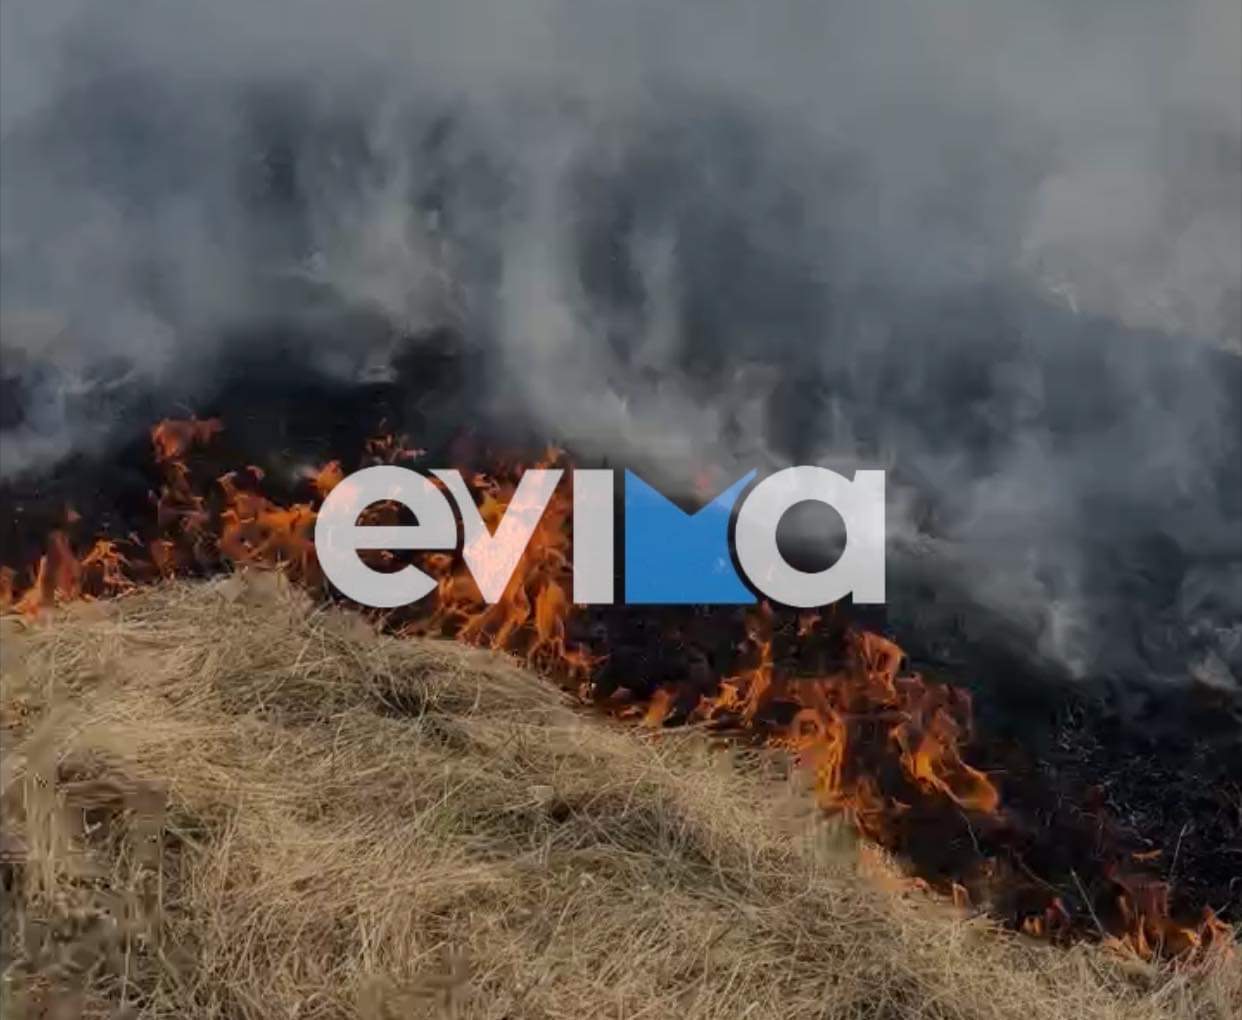 Προσοχή σήμερα στην Εύβοια: Υψηλός κίνδυνος πυρκαγιάς – Οδηγίες της Πολιτικής Προστασίας